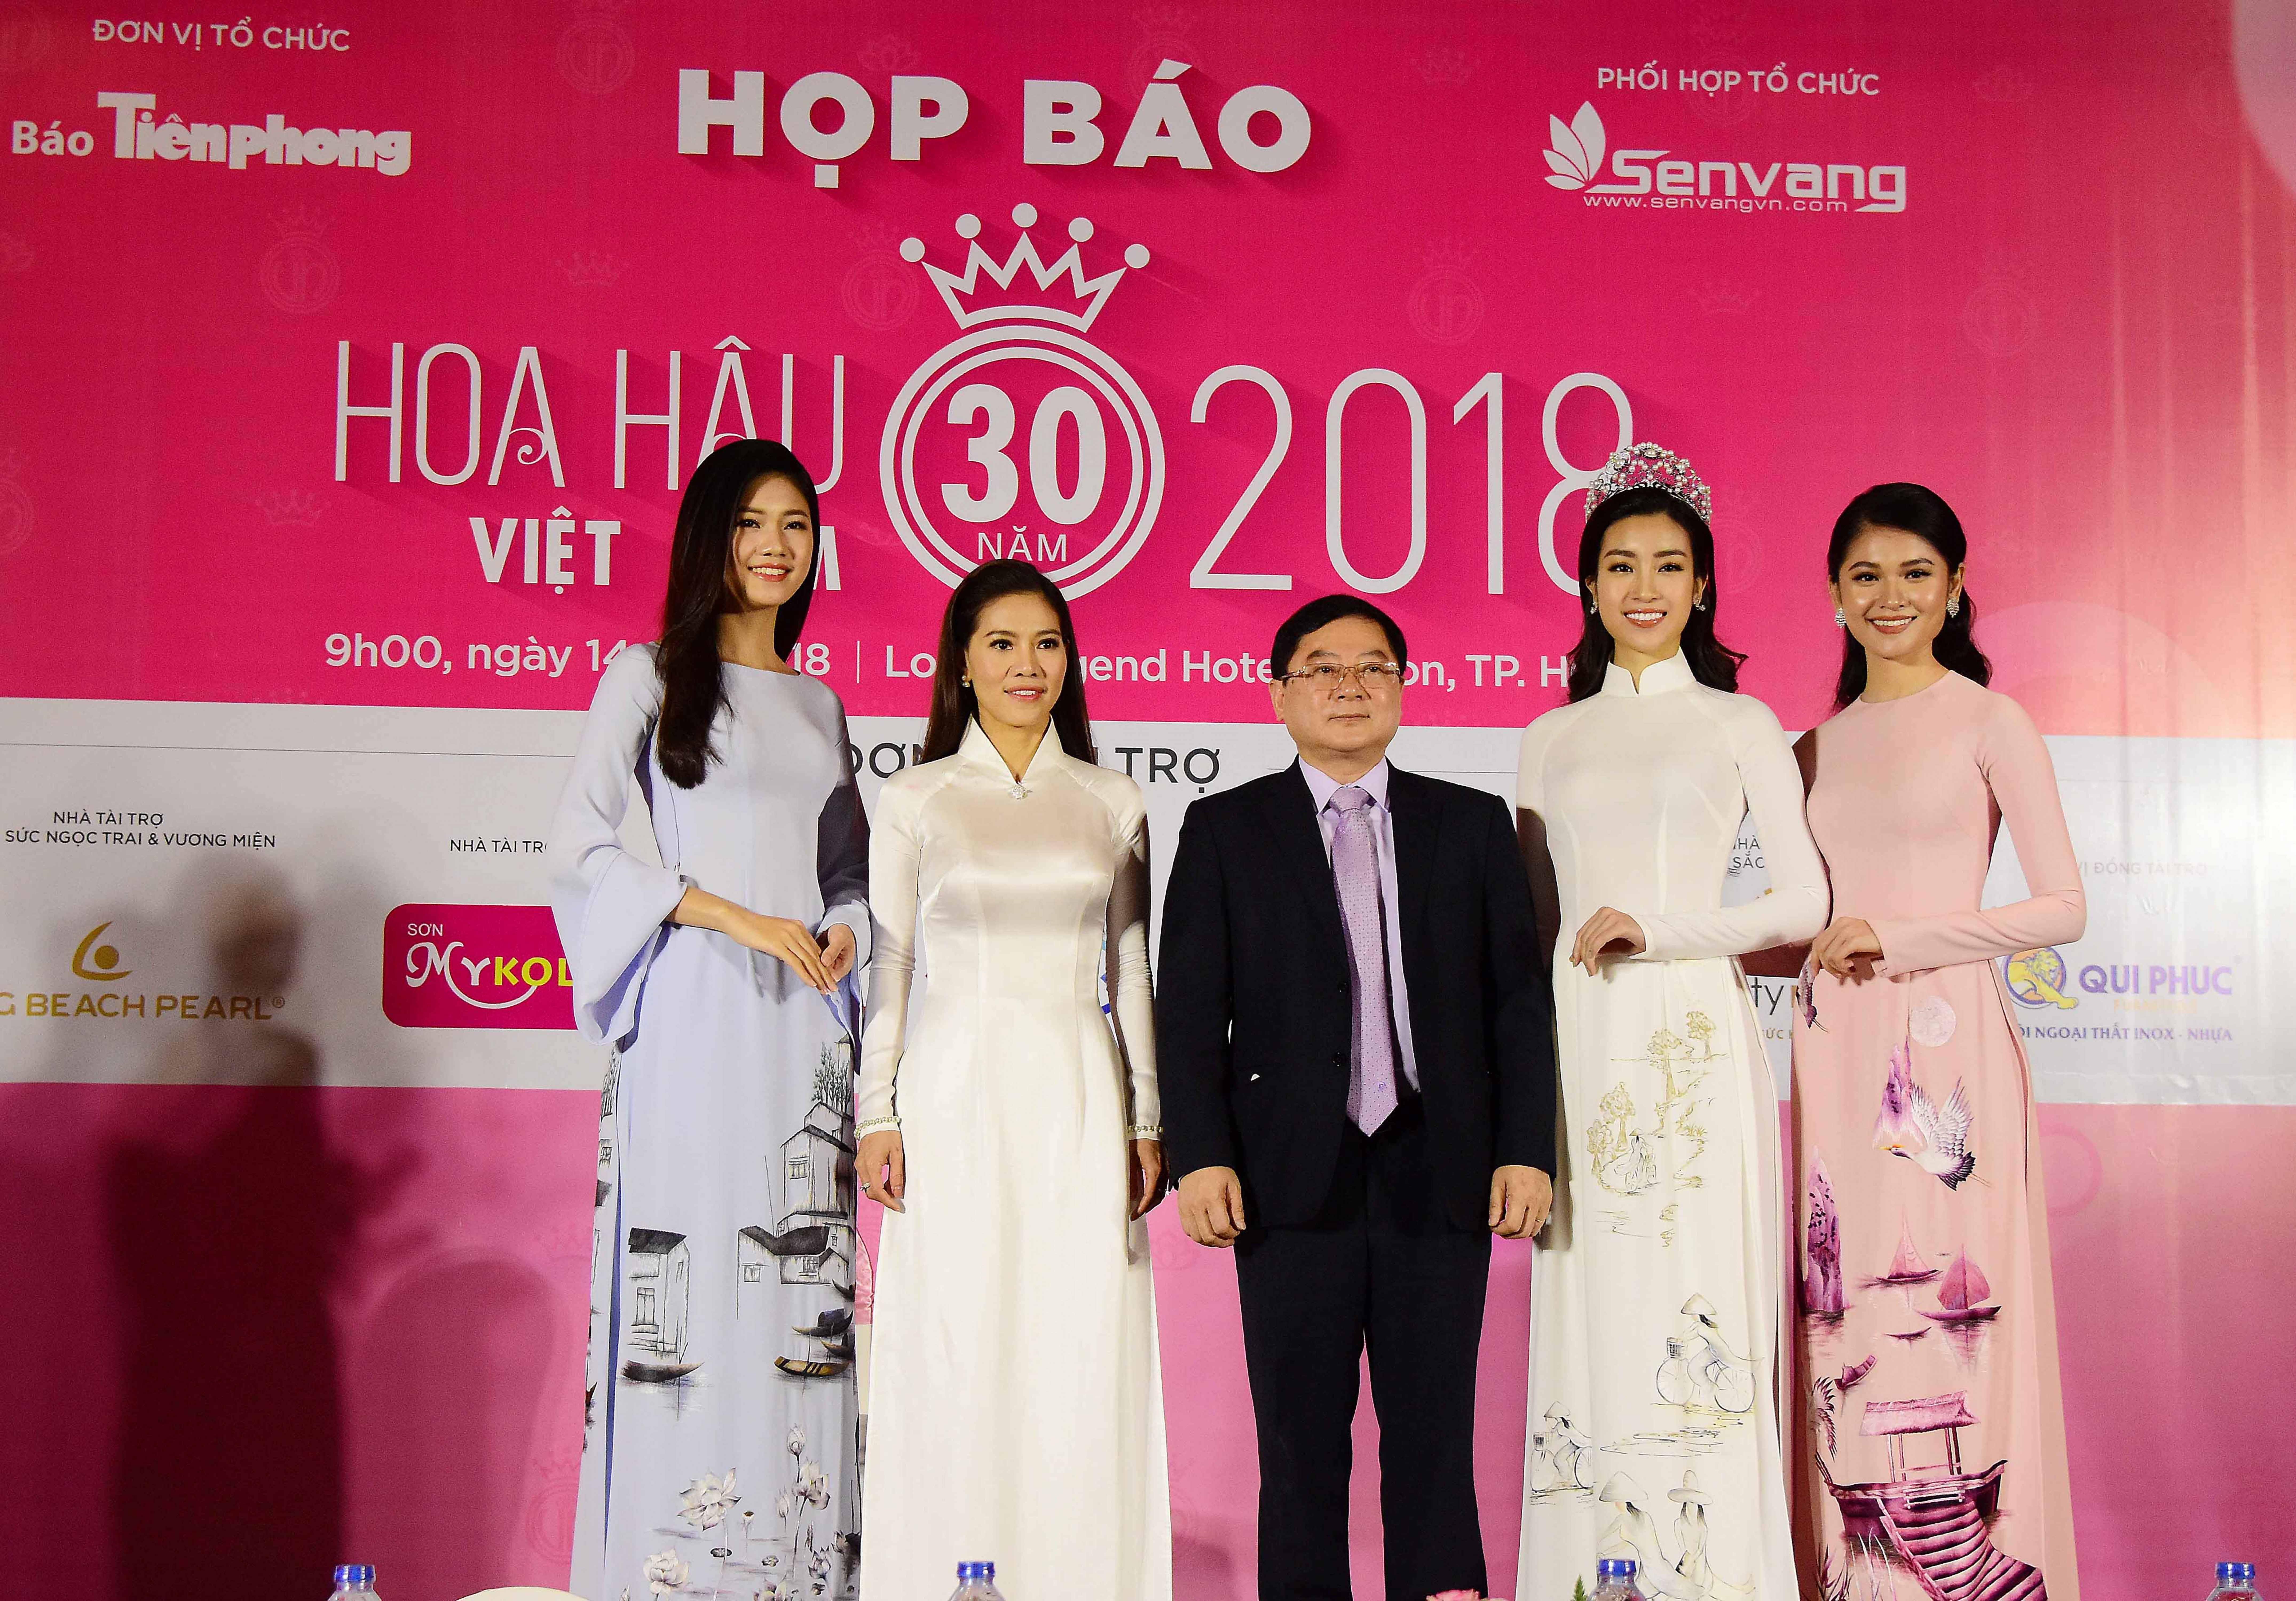  Nhà báo Lê Xuân Sơn - Trưởng Ban tổ chức và bà Phạm Kim Dung - Phó trưởng Ban tổ chức cuộc thi Hoa hậu Việt Nam 2018 cùng các người đẹp